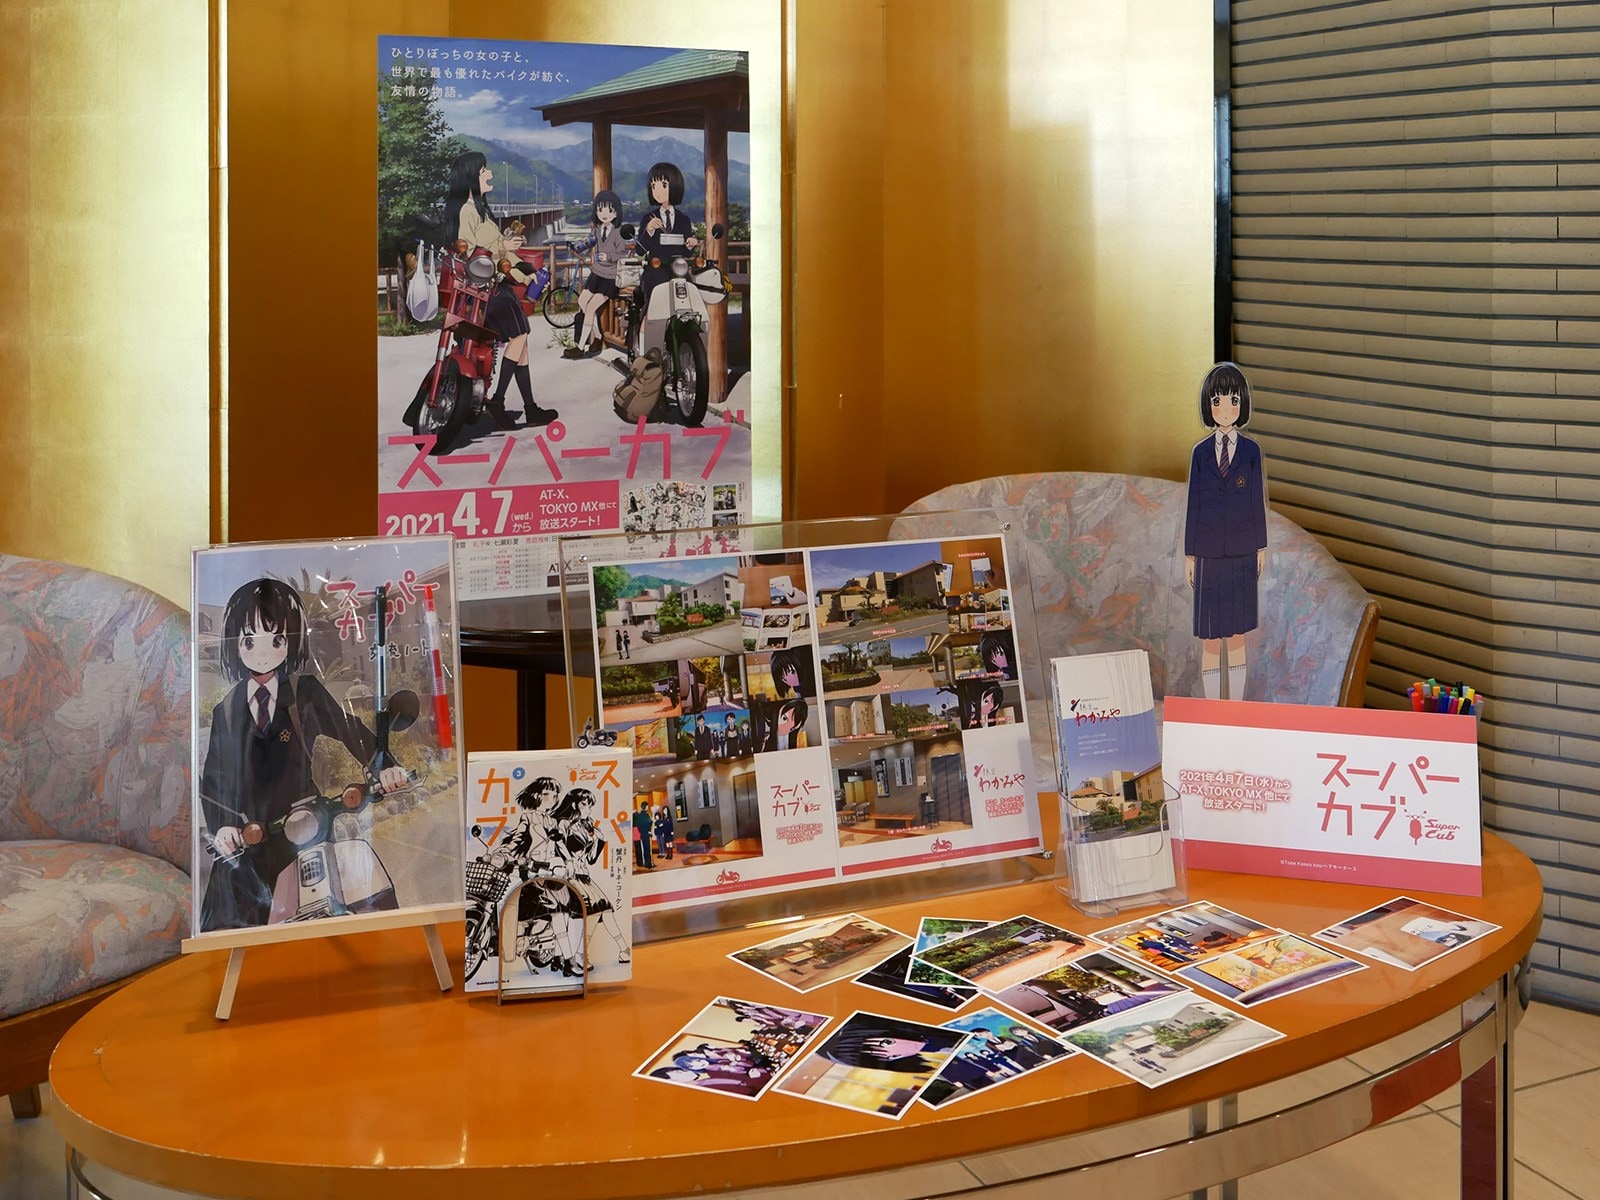 アニメ スーパーカブ の聖地は山梨だけじゃない 修学旅行先の鎌倉のホテルが聖地巡礼者を歓迎 All About News